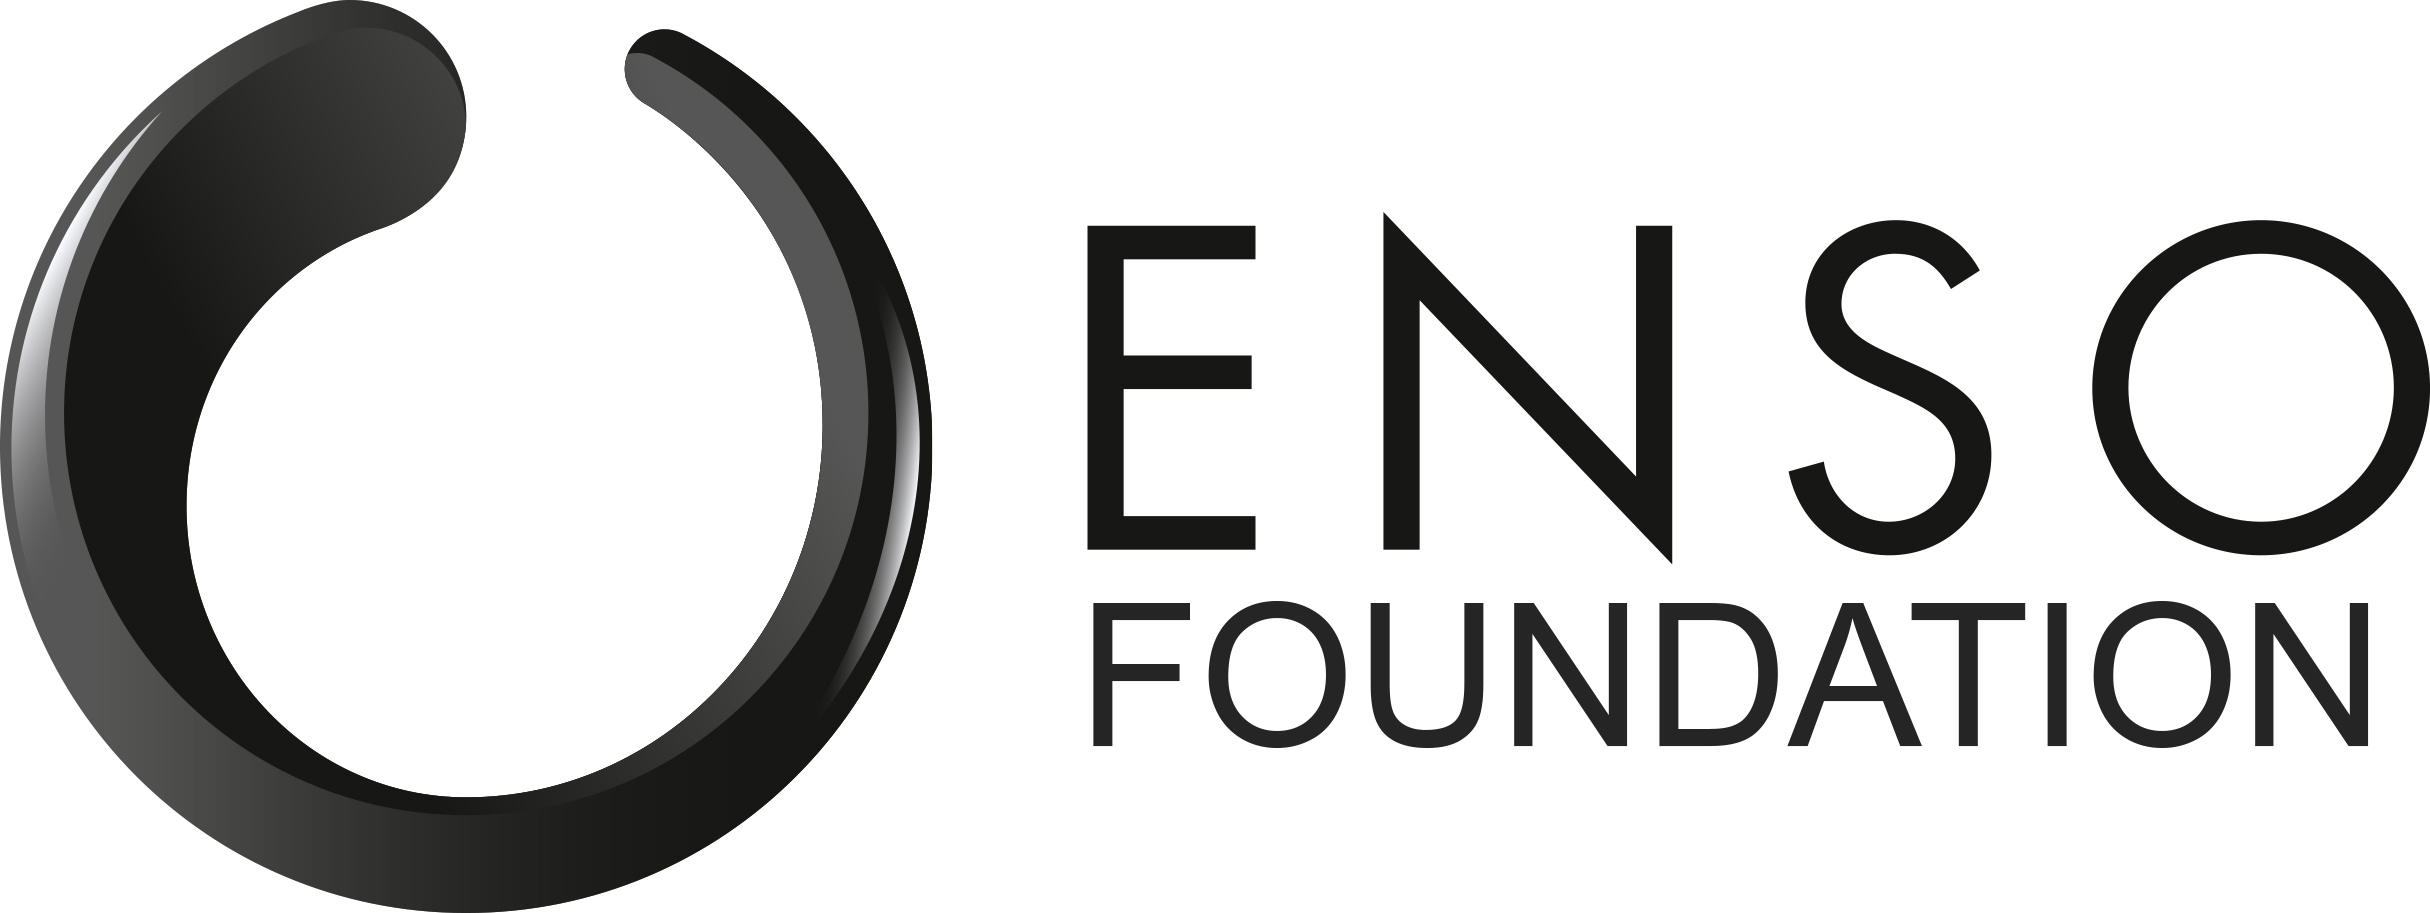 Enso Foundation